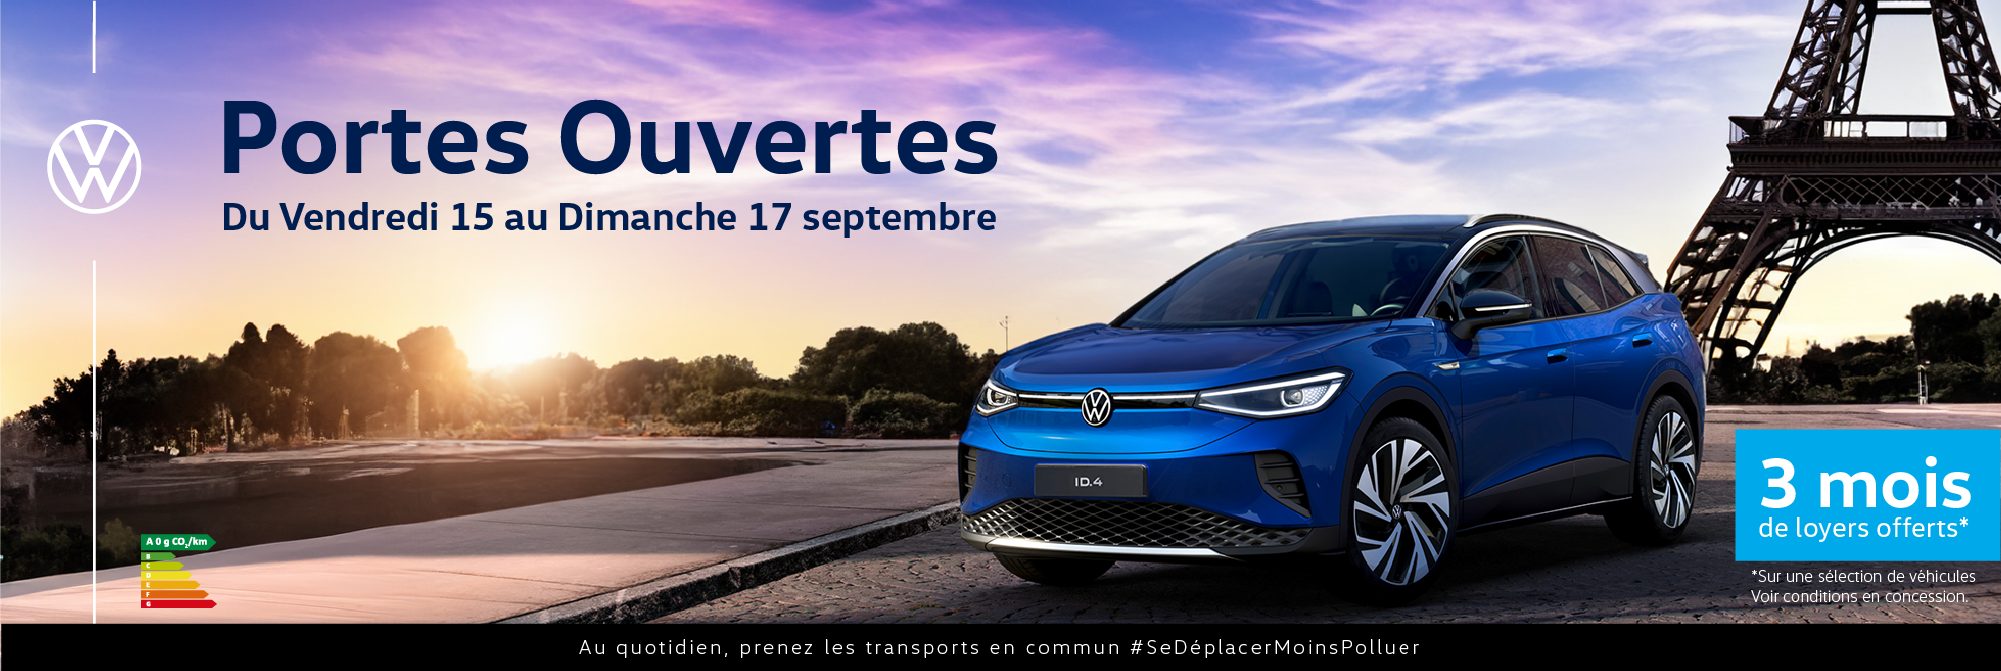 Volkswagen Paris 13 - Journées Portes Ouvertes du 15 au 17 septembre 